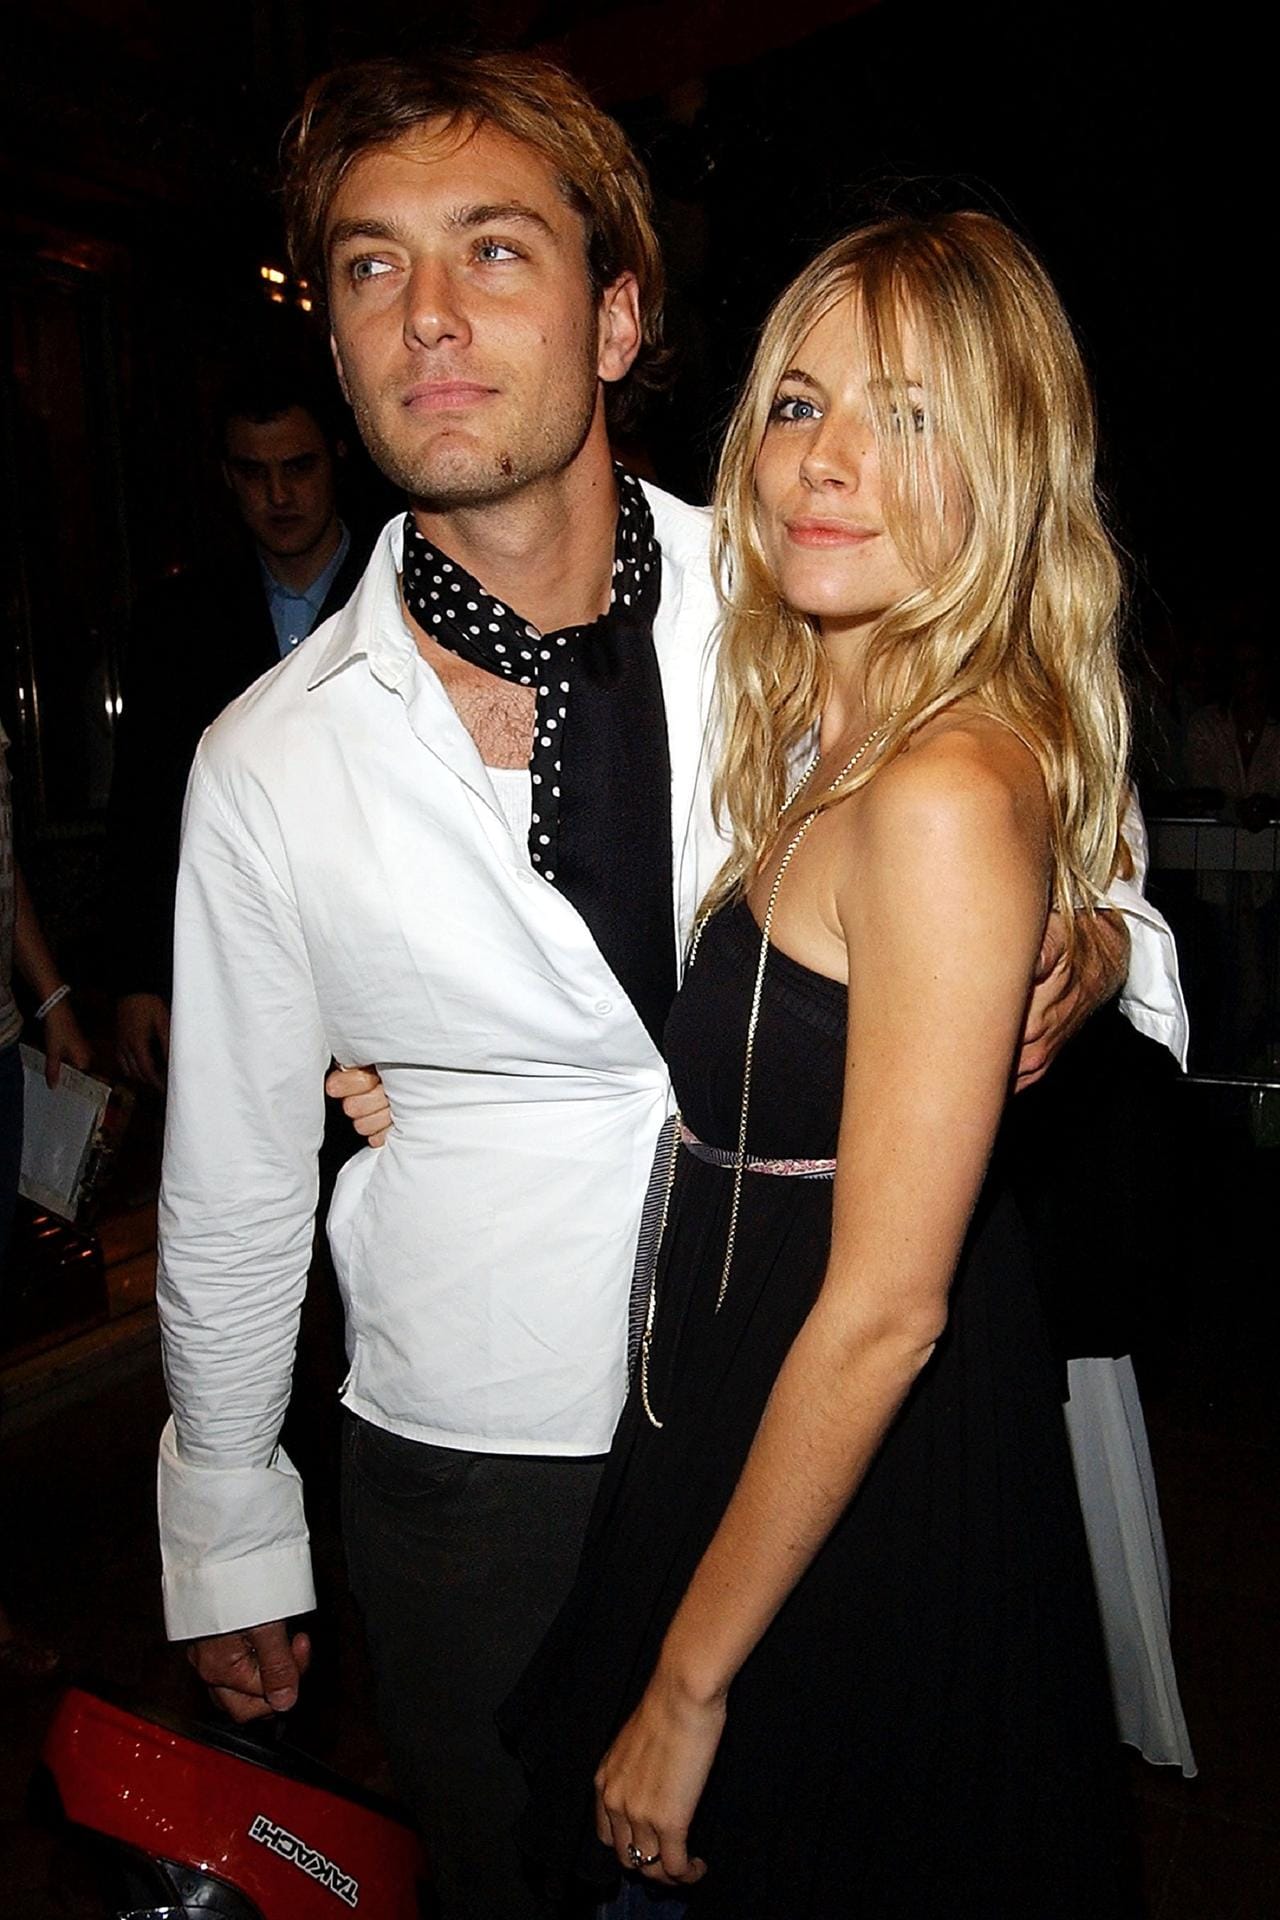 Jude Law und Sienna Miller: Nach der Verlobung 2004 folgte 2005 die Trennung der Schauspieler, nachdem Jude Law Sienna Miller mit der Nanny ihrer Kinder betrogen hatte.